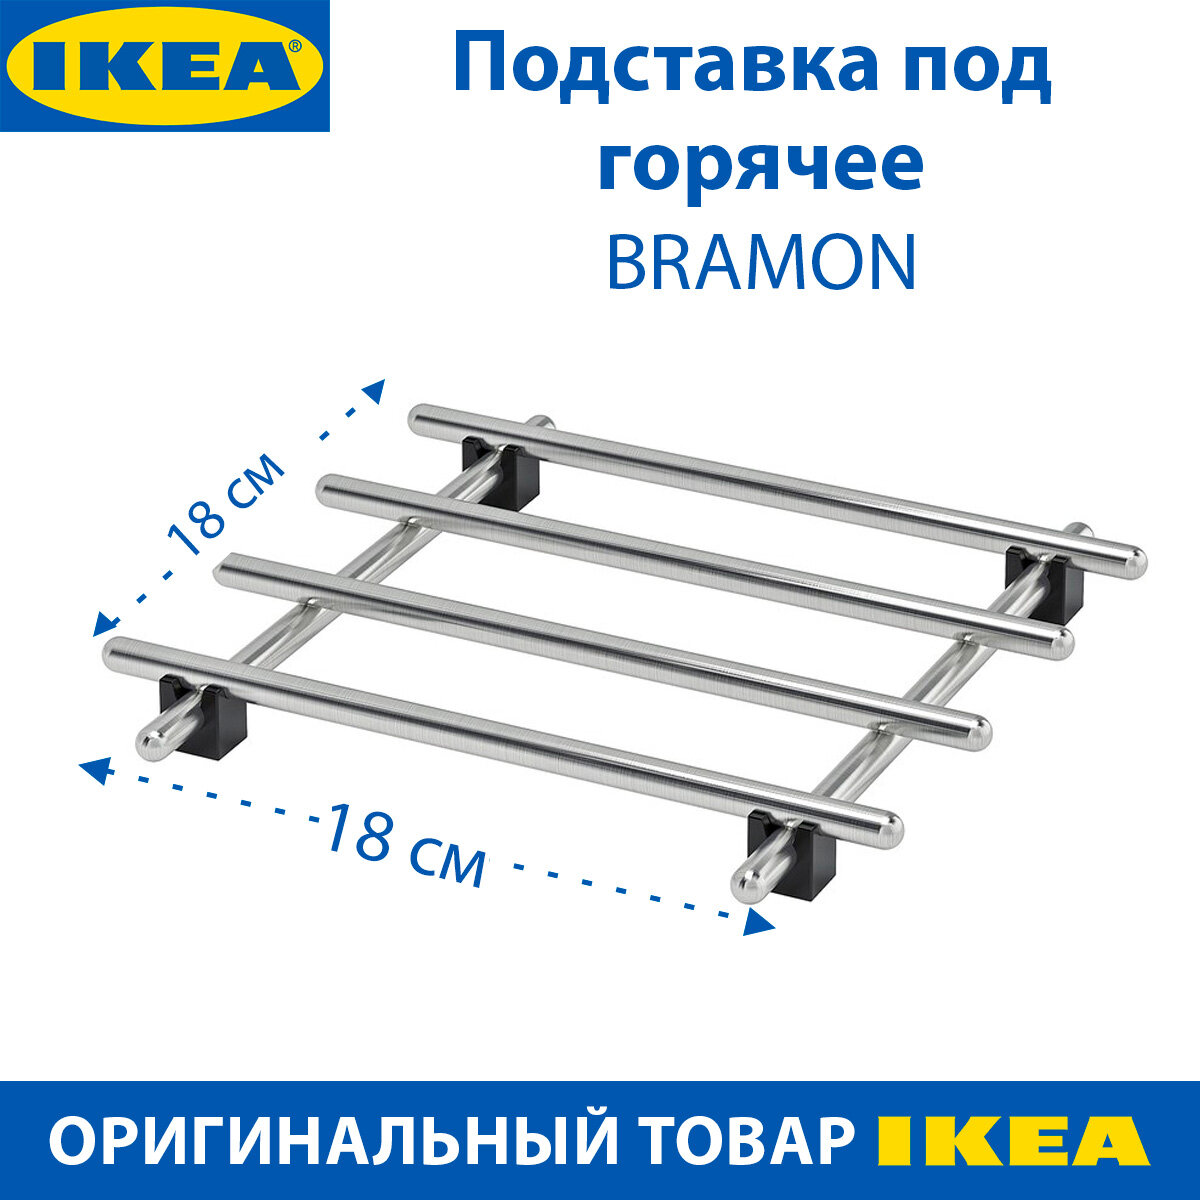 Подставка под горячее IKEA - LAMPLIG (лэмплиг), из нержавеющей стали, 18x18 см, 1 шт